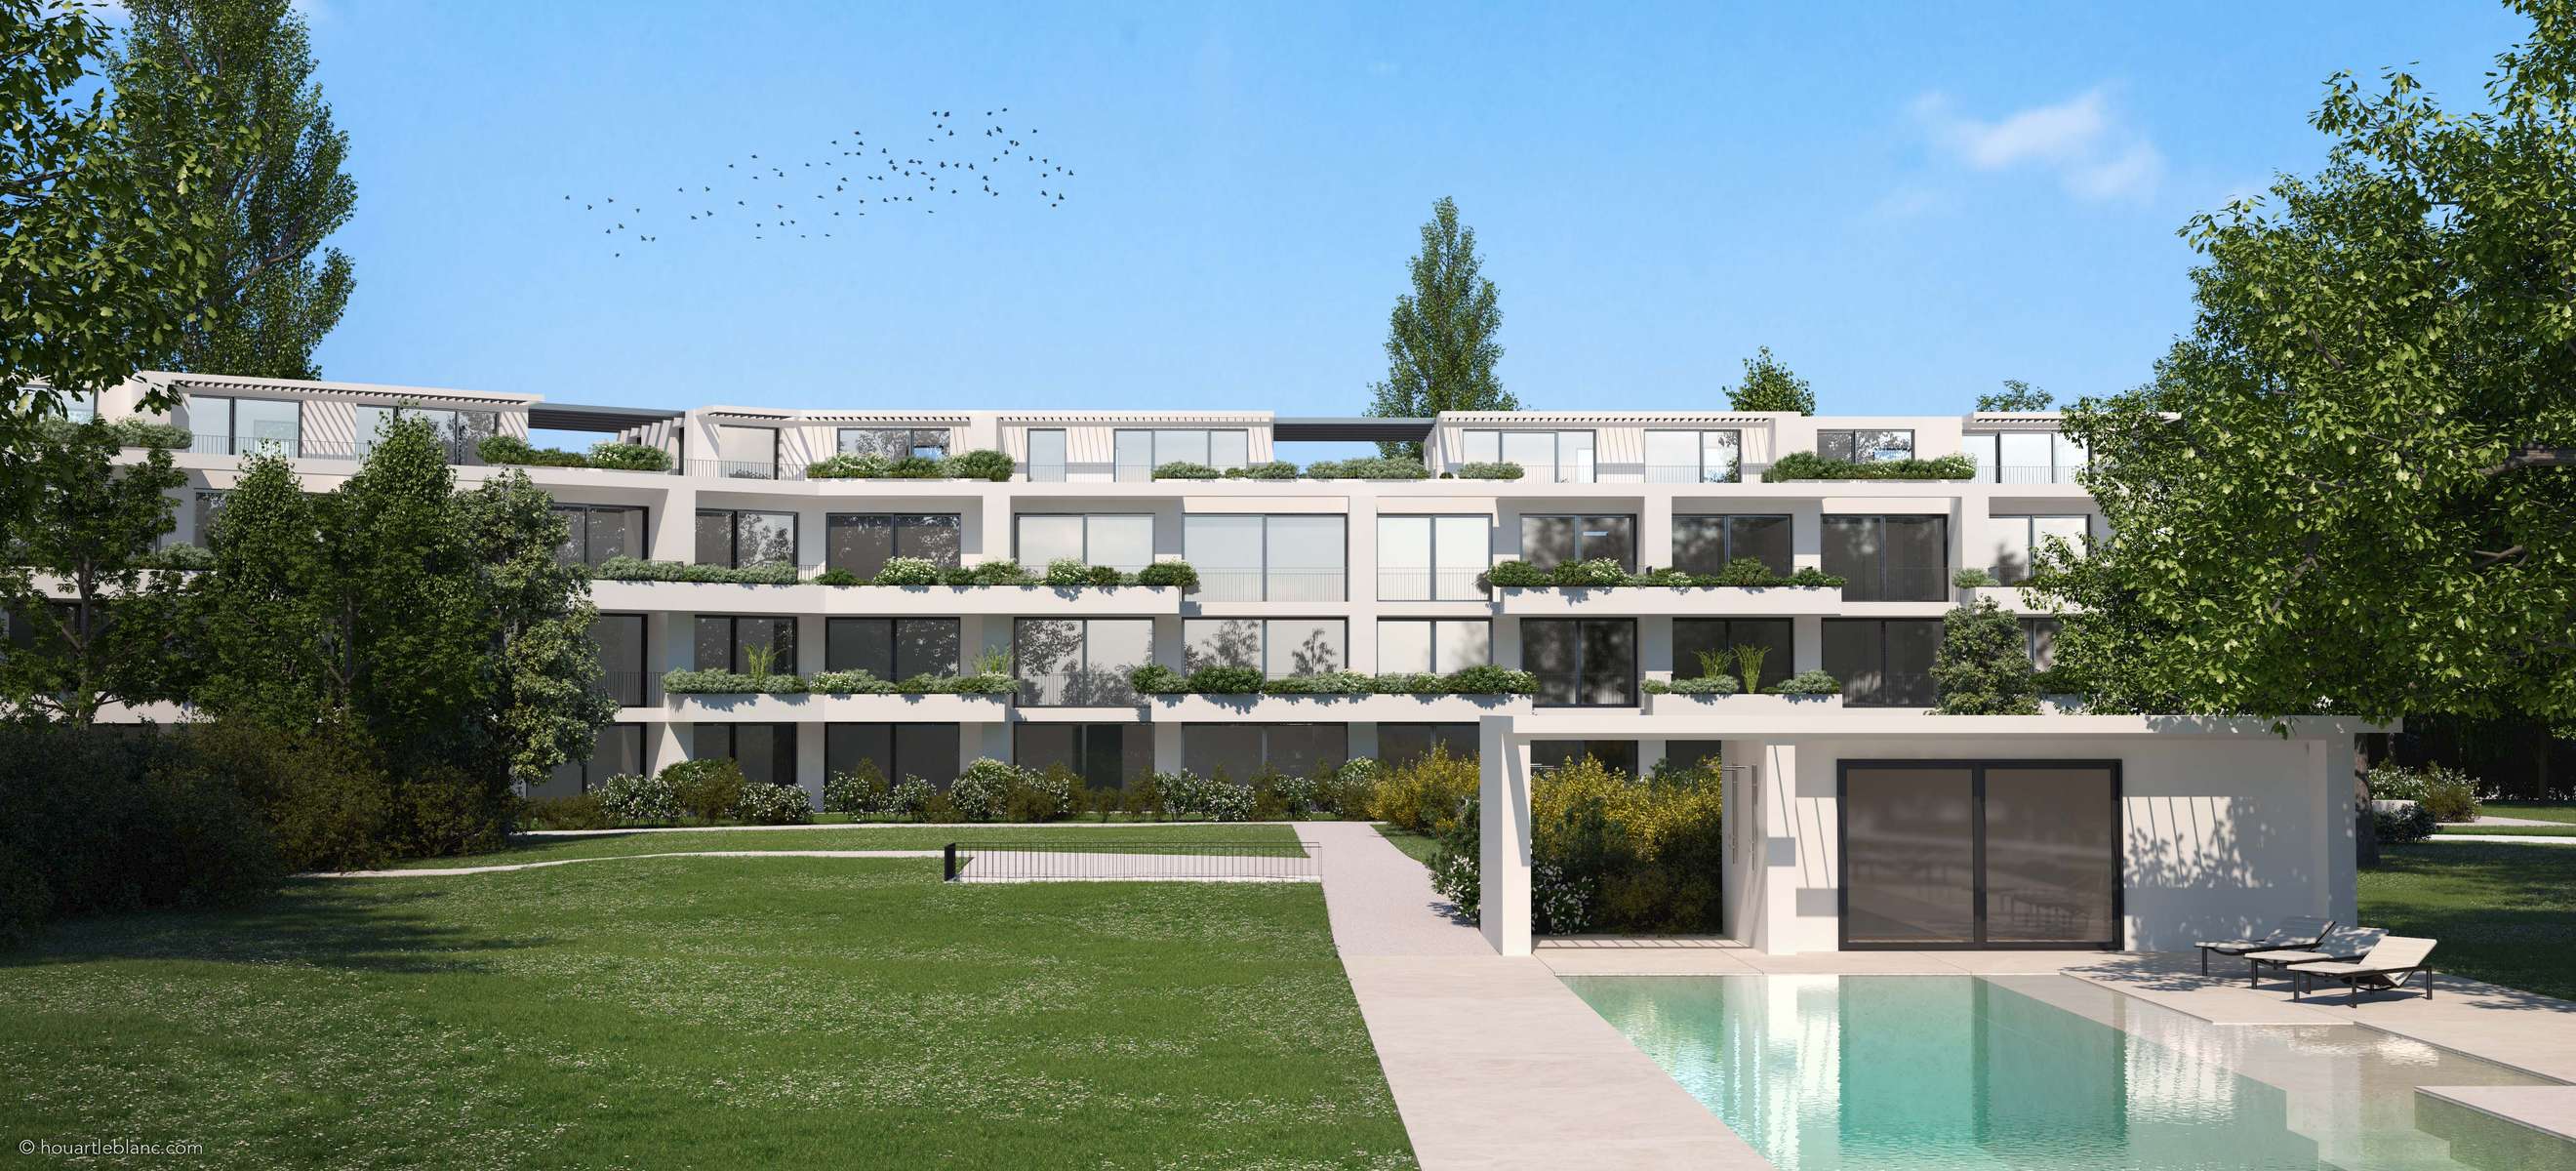 (ris+partenaires 2018)Projet: Construction d'un immeuble de 22 logements THPEGenève - Suisse Surface: 4'192 m2Chef de projet:Antoine RisMandat: Projet et construction 